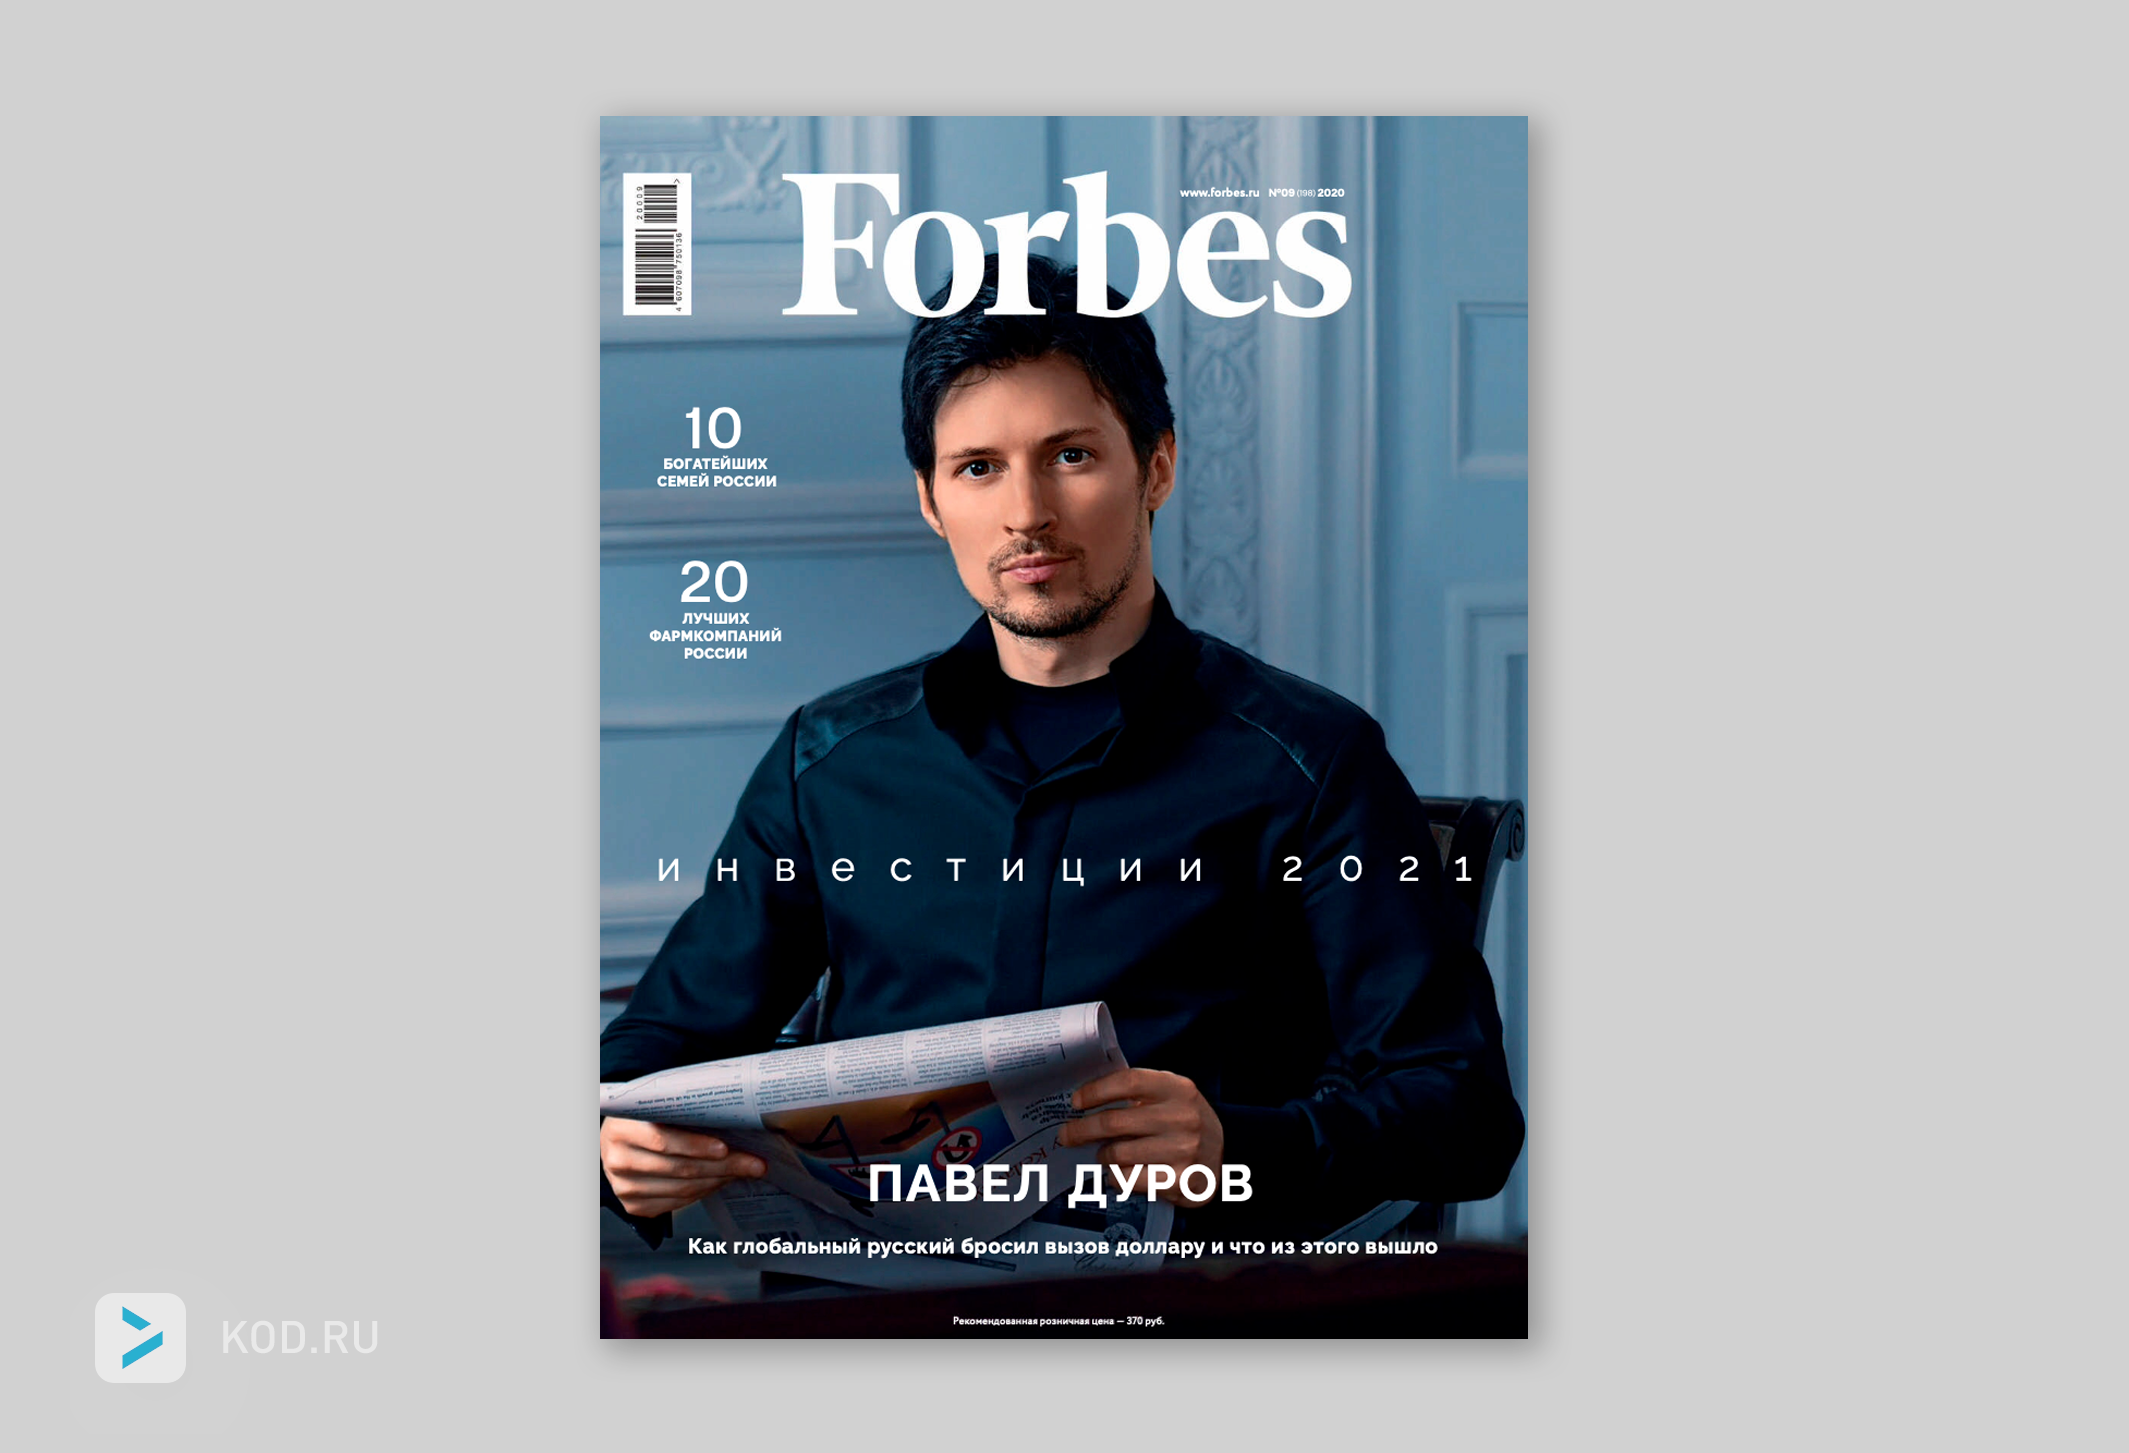 Платформа TON Павла Дурова: что это такое и почему у нее проблемы? Рассказываем доступным языком | BanksToday